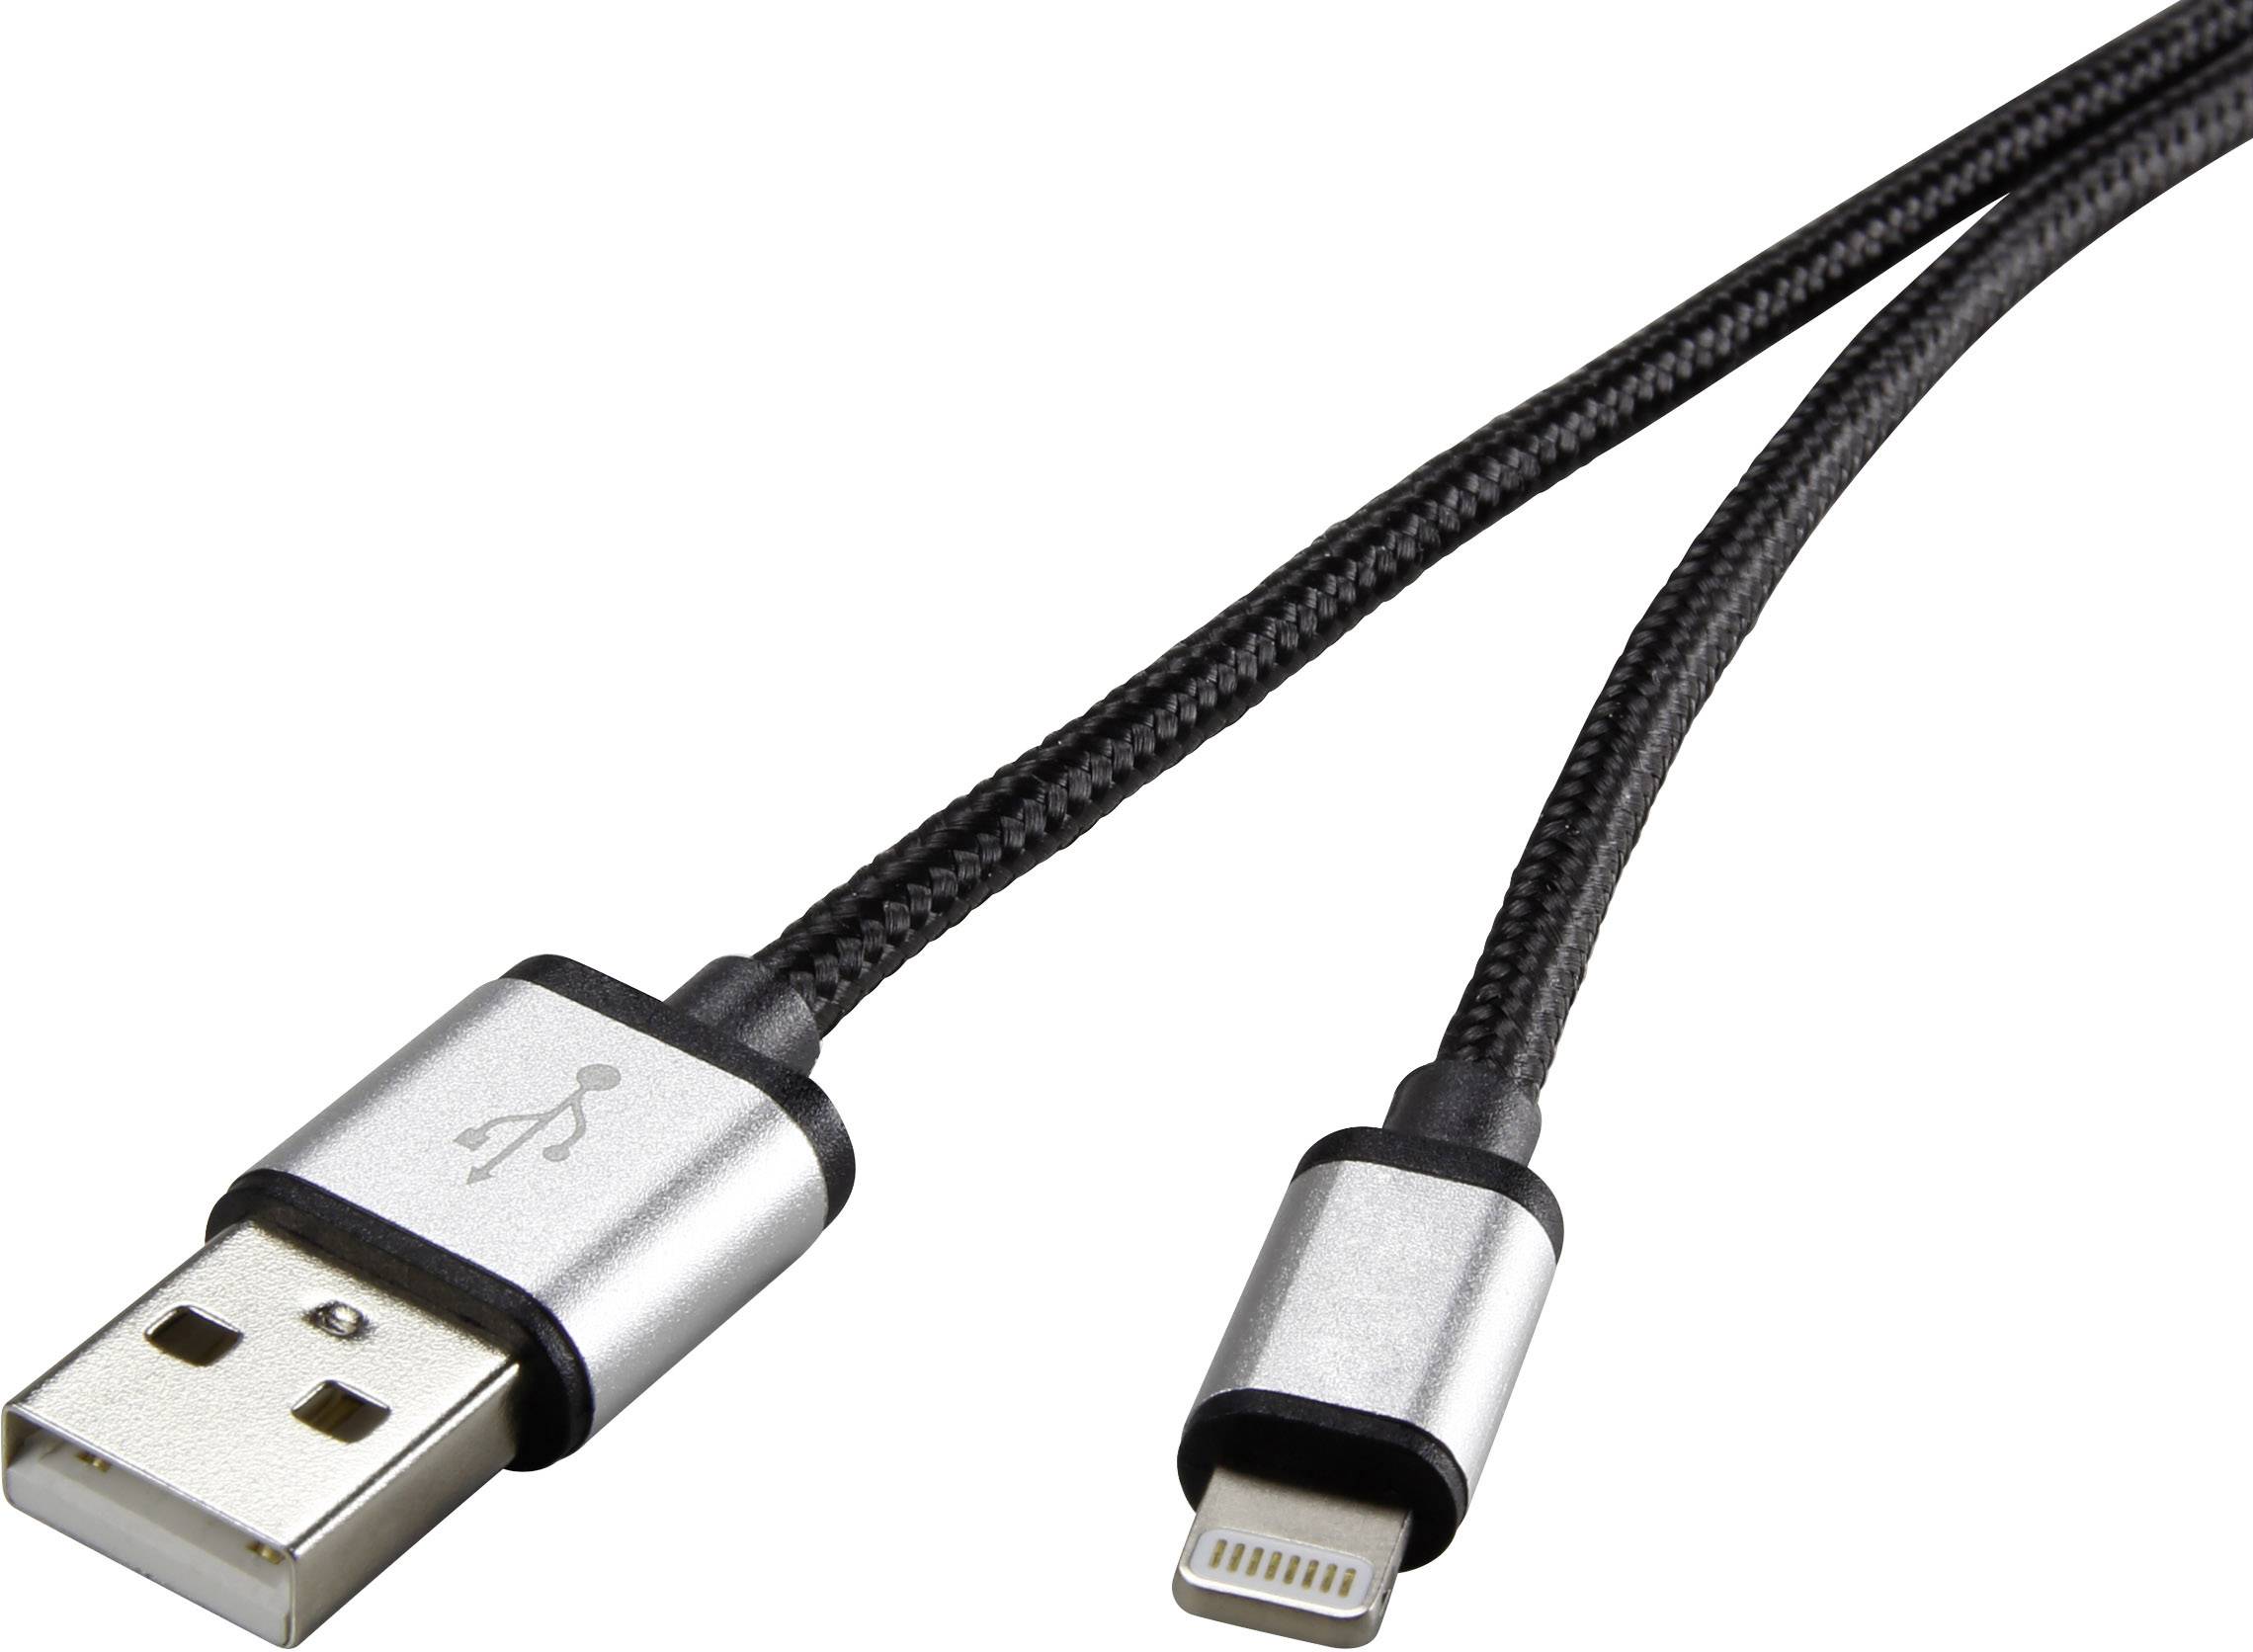 CONRAD Renkforce USB 2.0 Anschlusskabel [1x USB 2.0 Stecker A - 1x Apple Dock-Stecker Lightning] 3 m